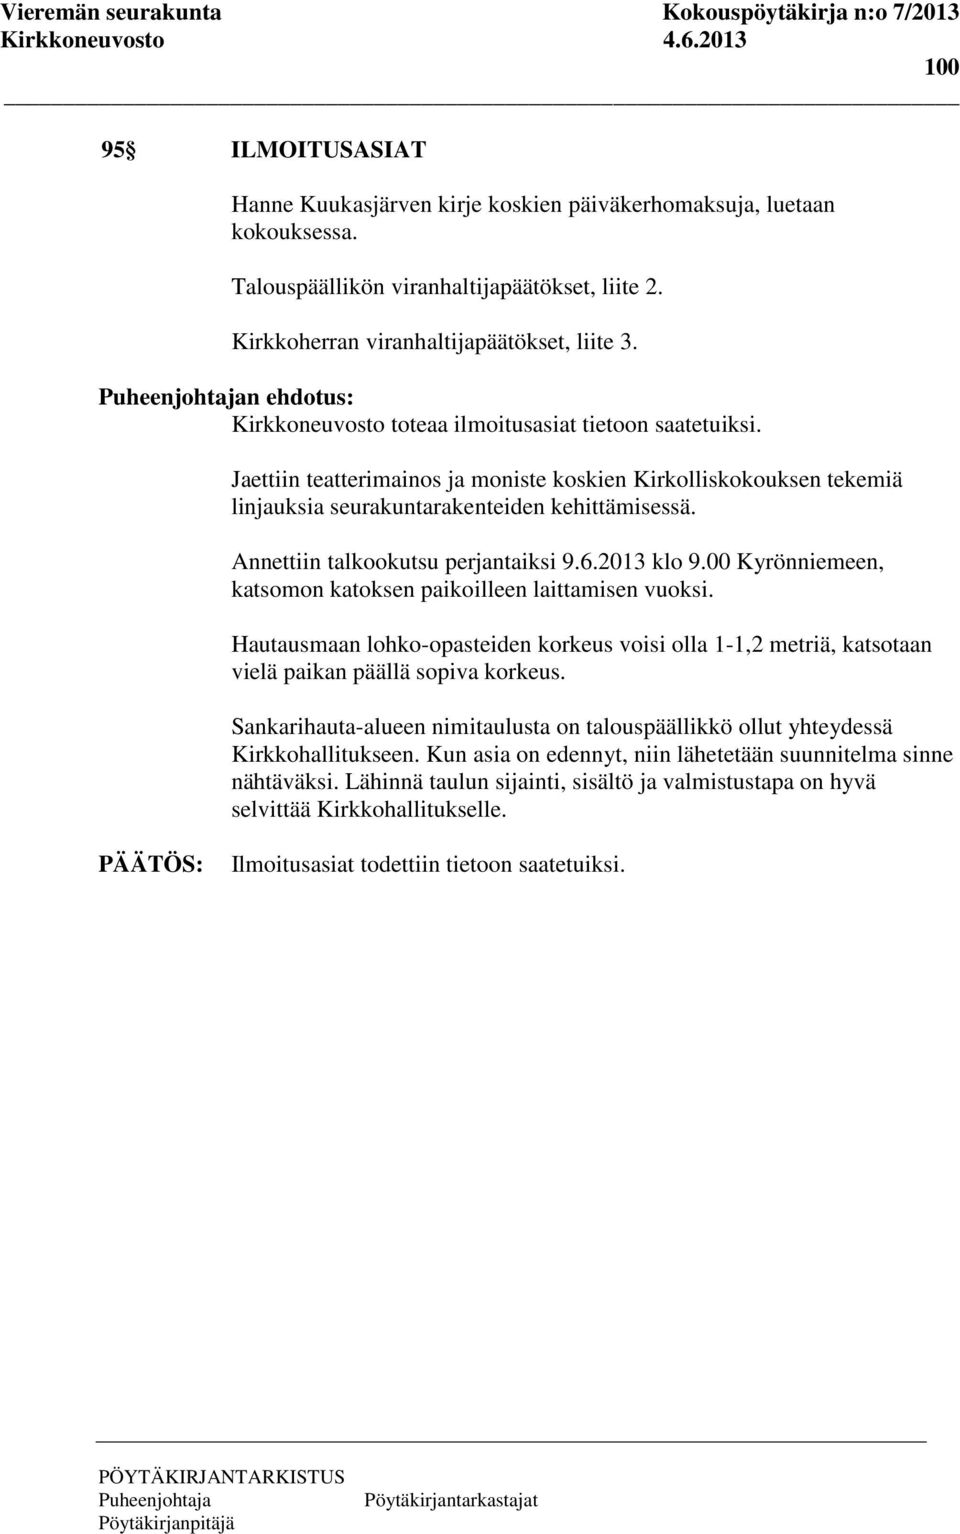 Annettiin talkookutsu perjantaiksi 9.6.2013 klo 9.00 Kyrönniemeen, katsomon katoksen paikoilleen laittamisen vuoksi.